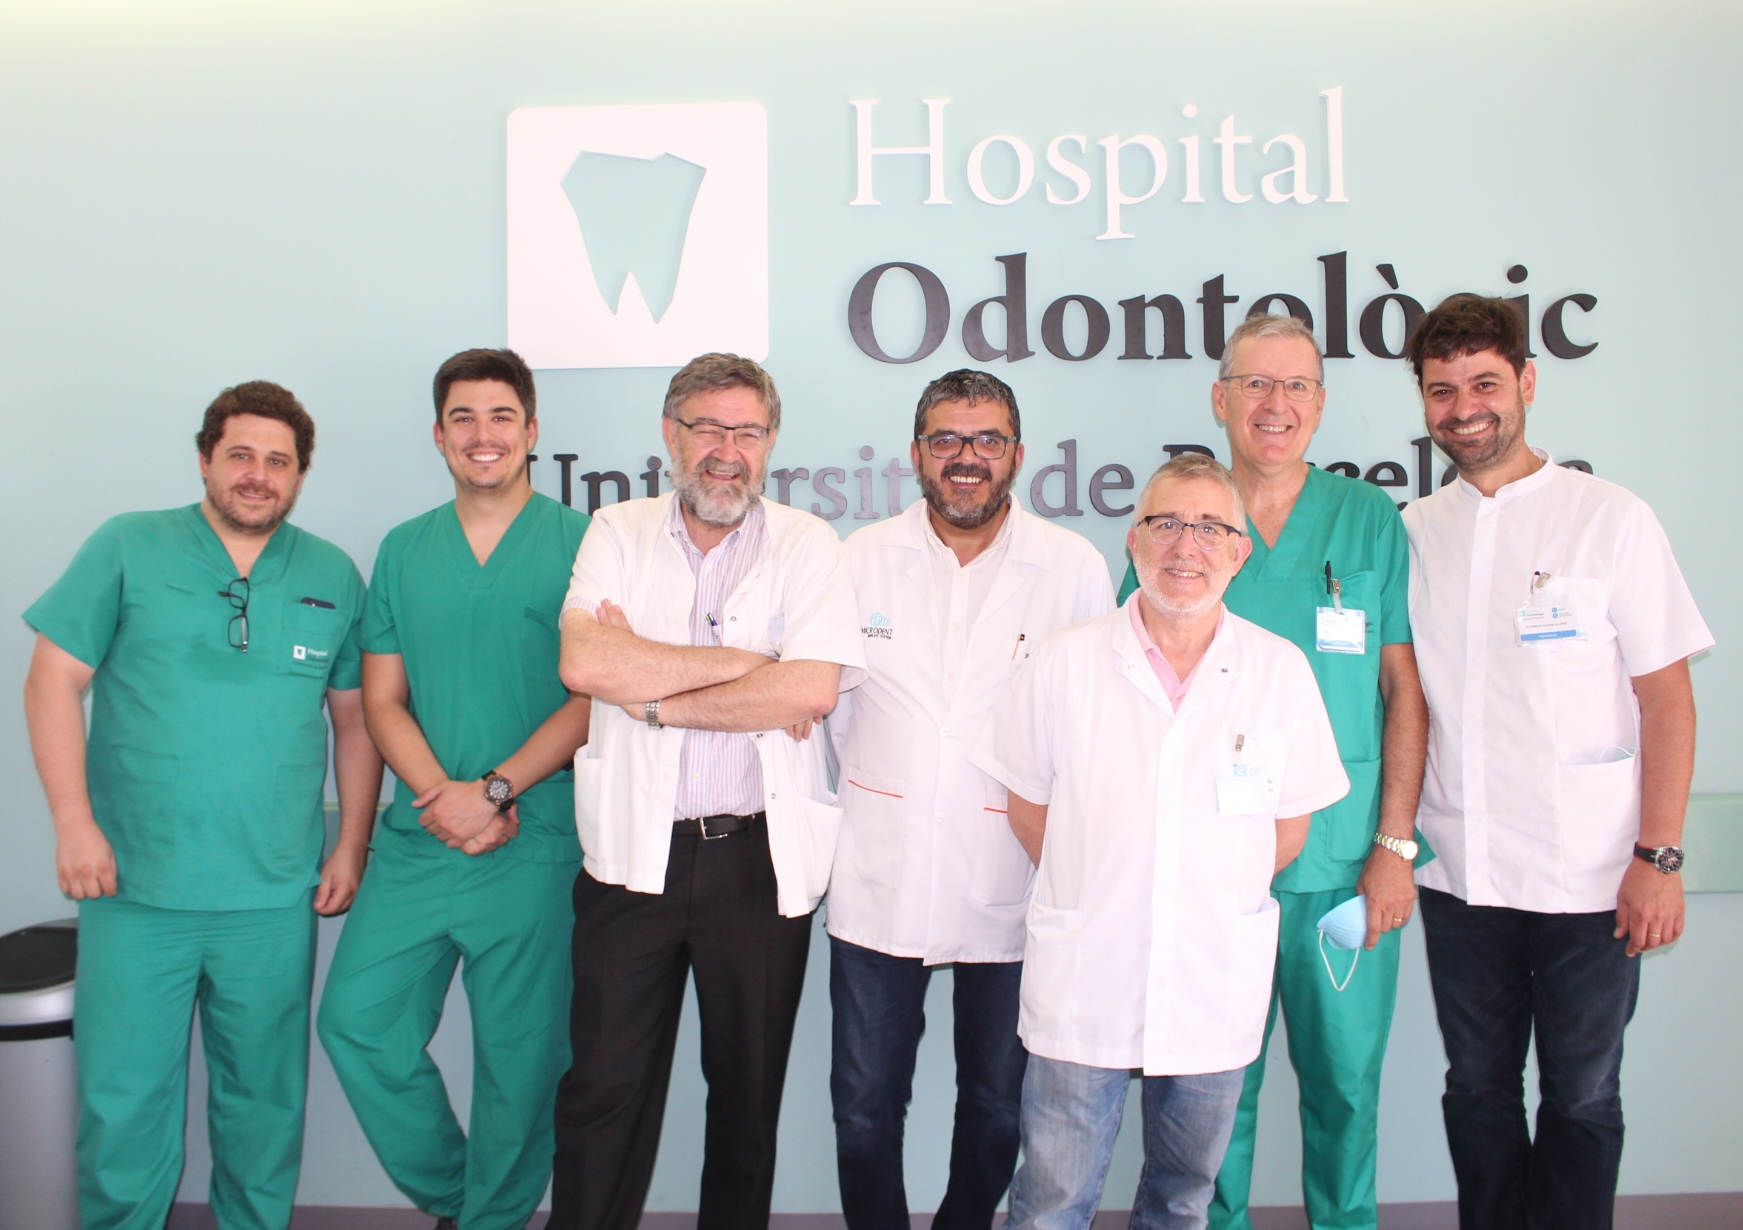 S’ha celebrat un nou taller intensiu de cirurgia implantològica avançada a l’Hospital Odontològic UB